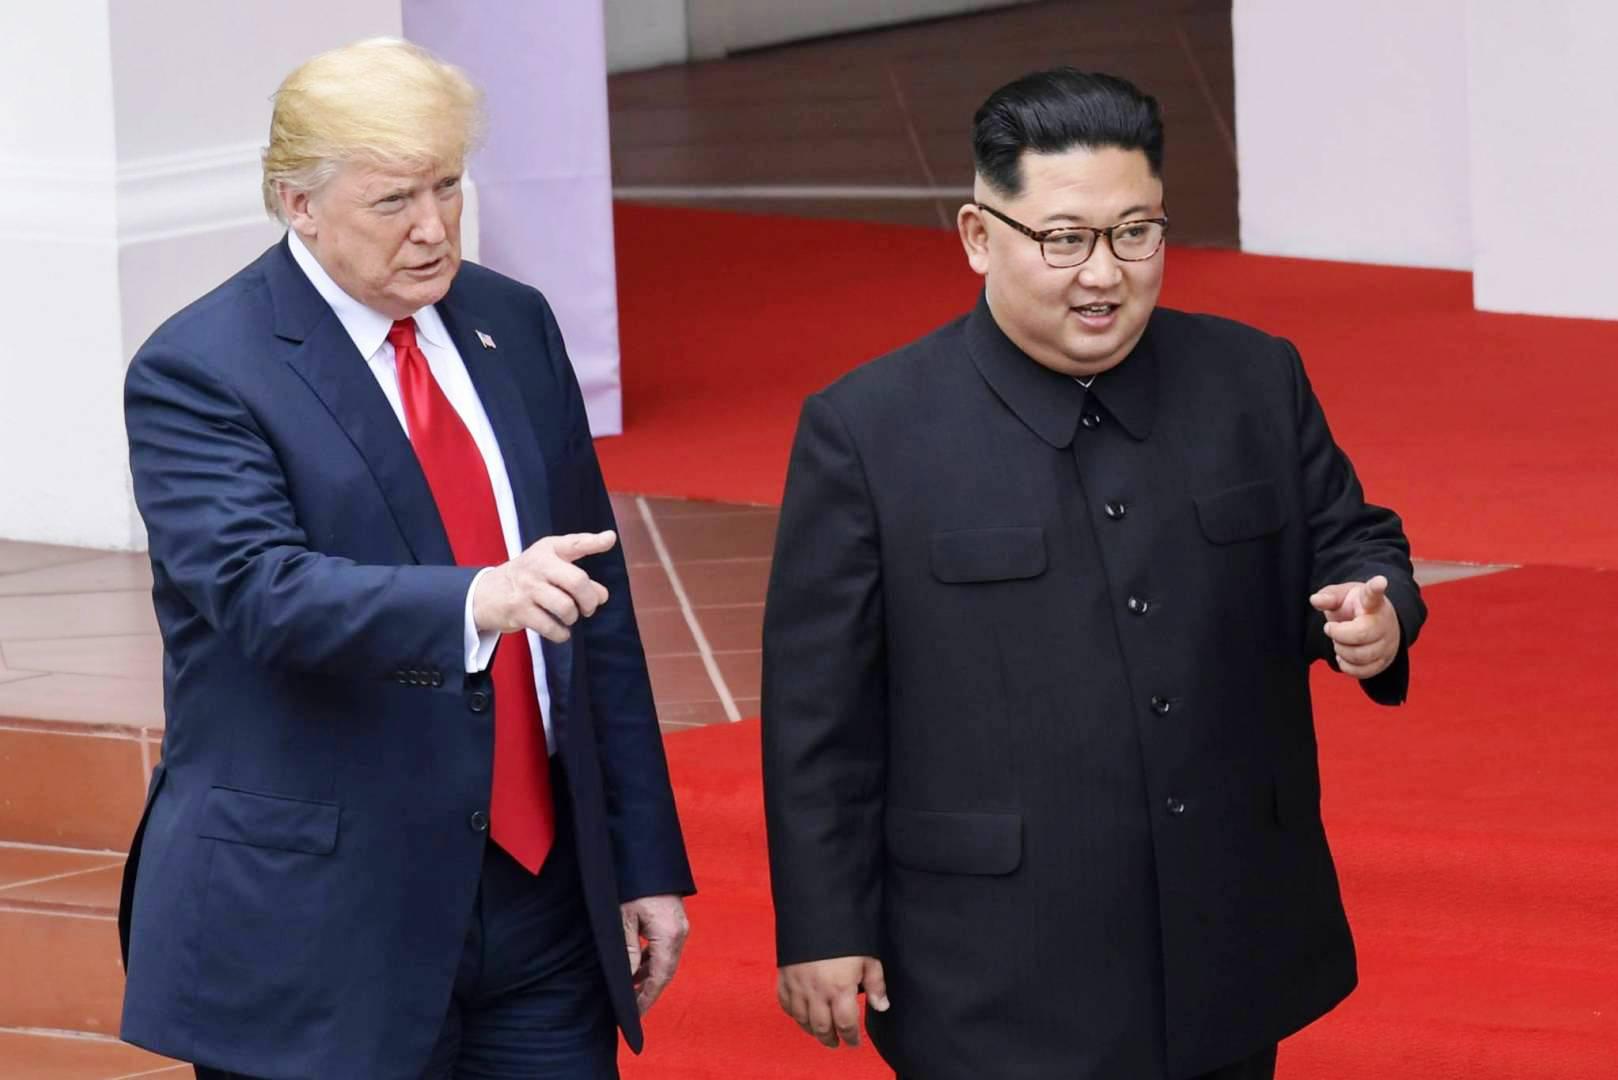 الرئيس الأميركي دونالد ترامب والزعيم الكوري الشمالي كيم جونغ أون في أول لقاء تاريخي بينهما